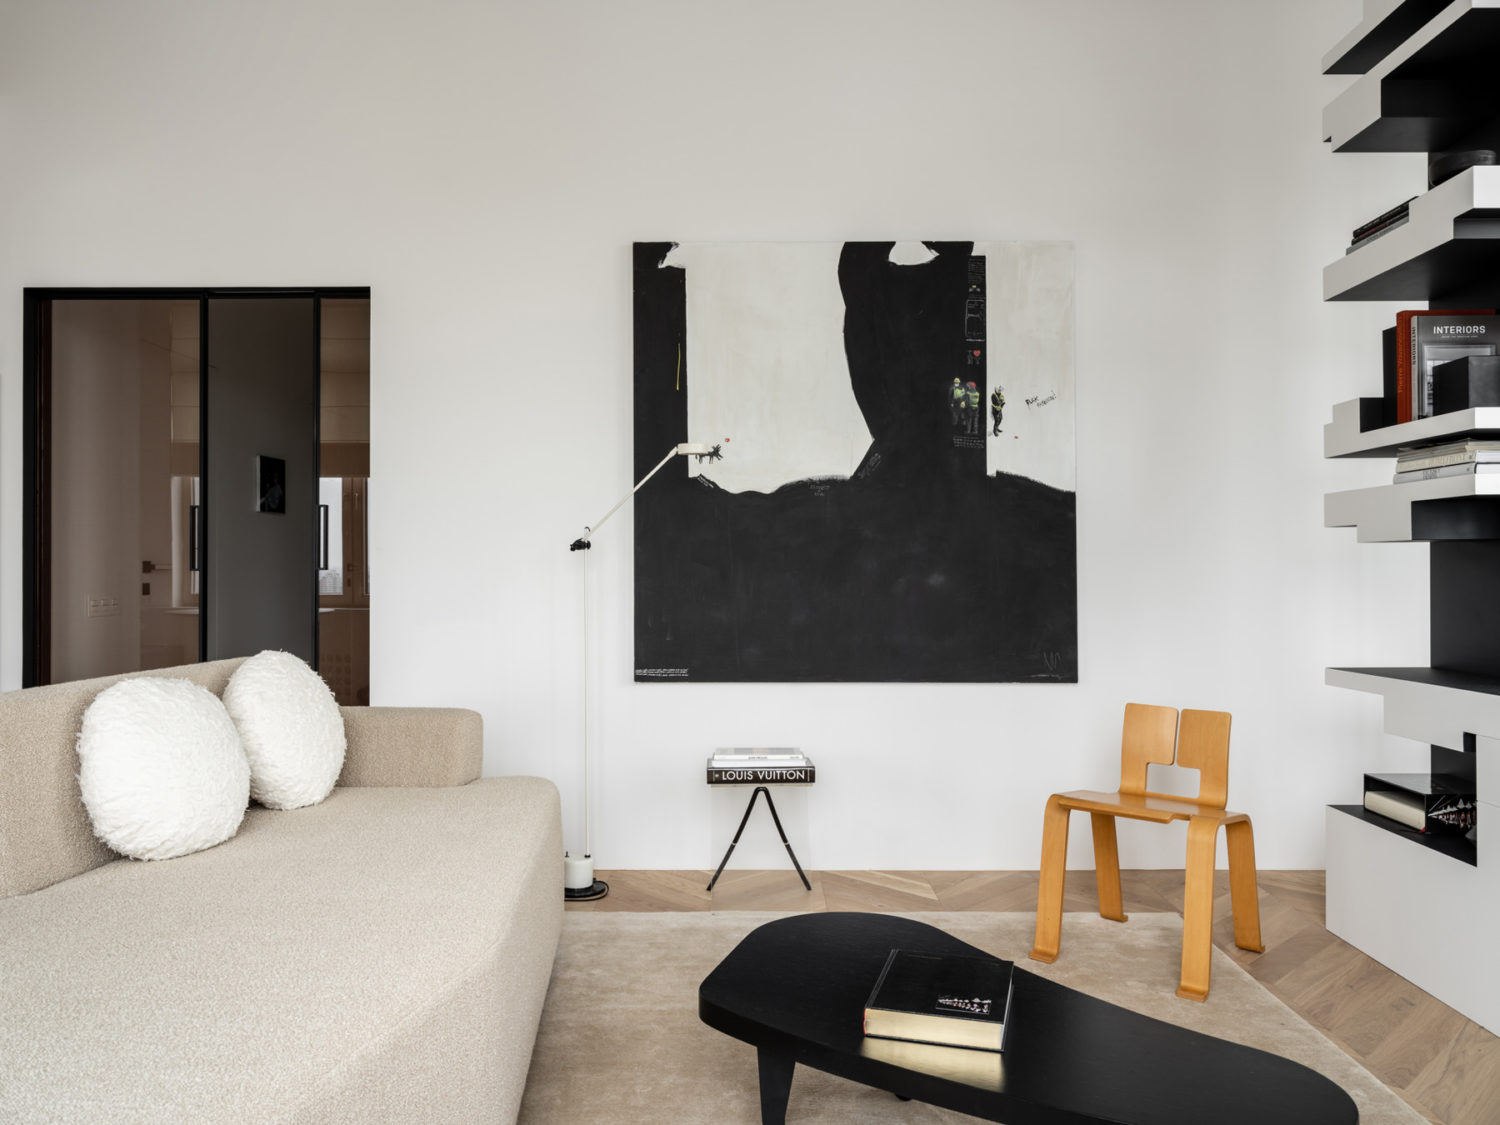 Chỉ dùng 2 màu đen - trắng nhưng căn hộ nhỏ 74 mét vuông sở hữu vẻ đẹp độc đáo, đầy nghệ thuật - Ảnh 1.